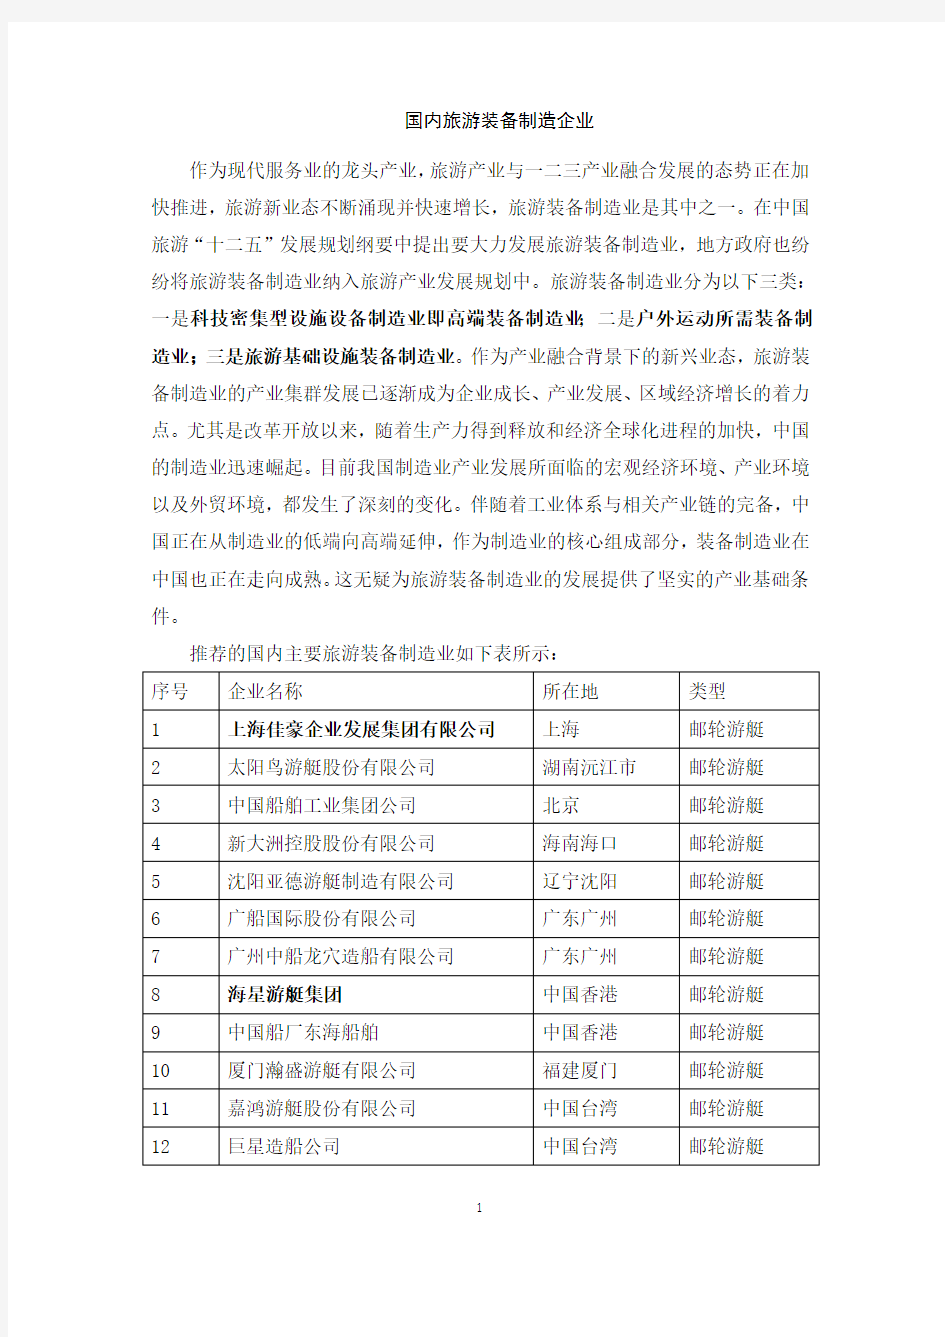 中国国内旅游装备制造企业名录20170718